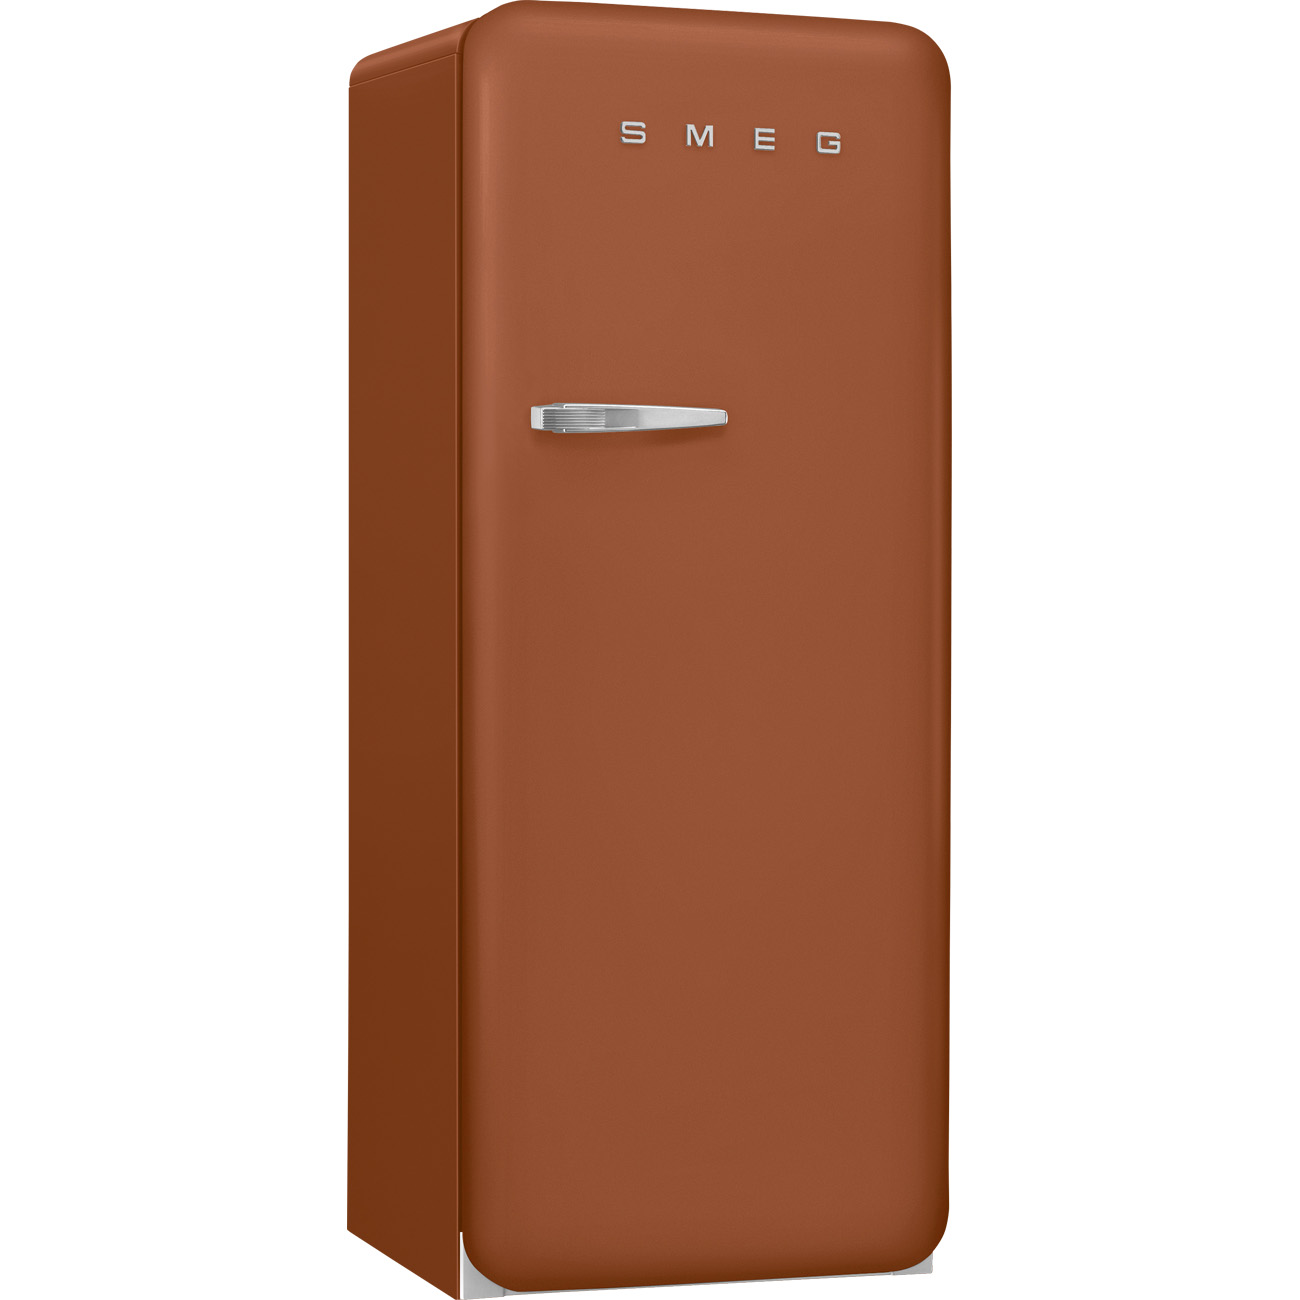 Rust koelkast - Smeg_3